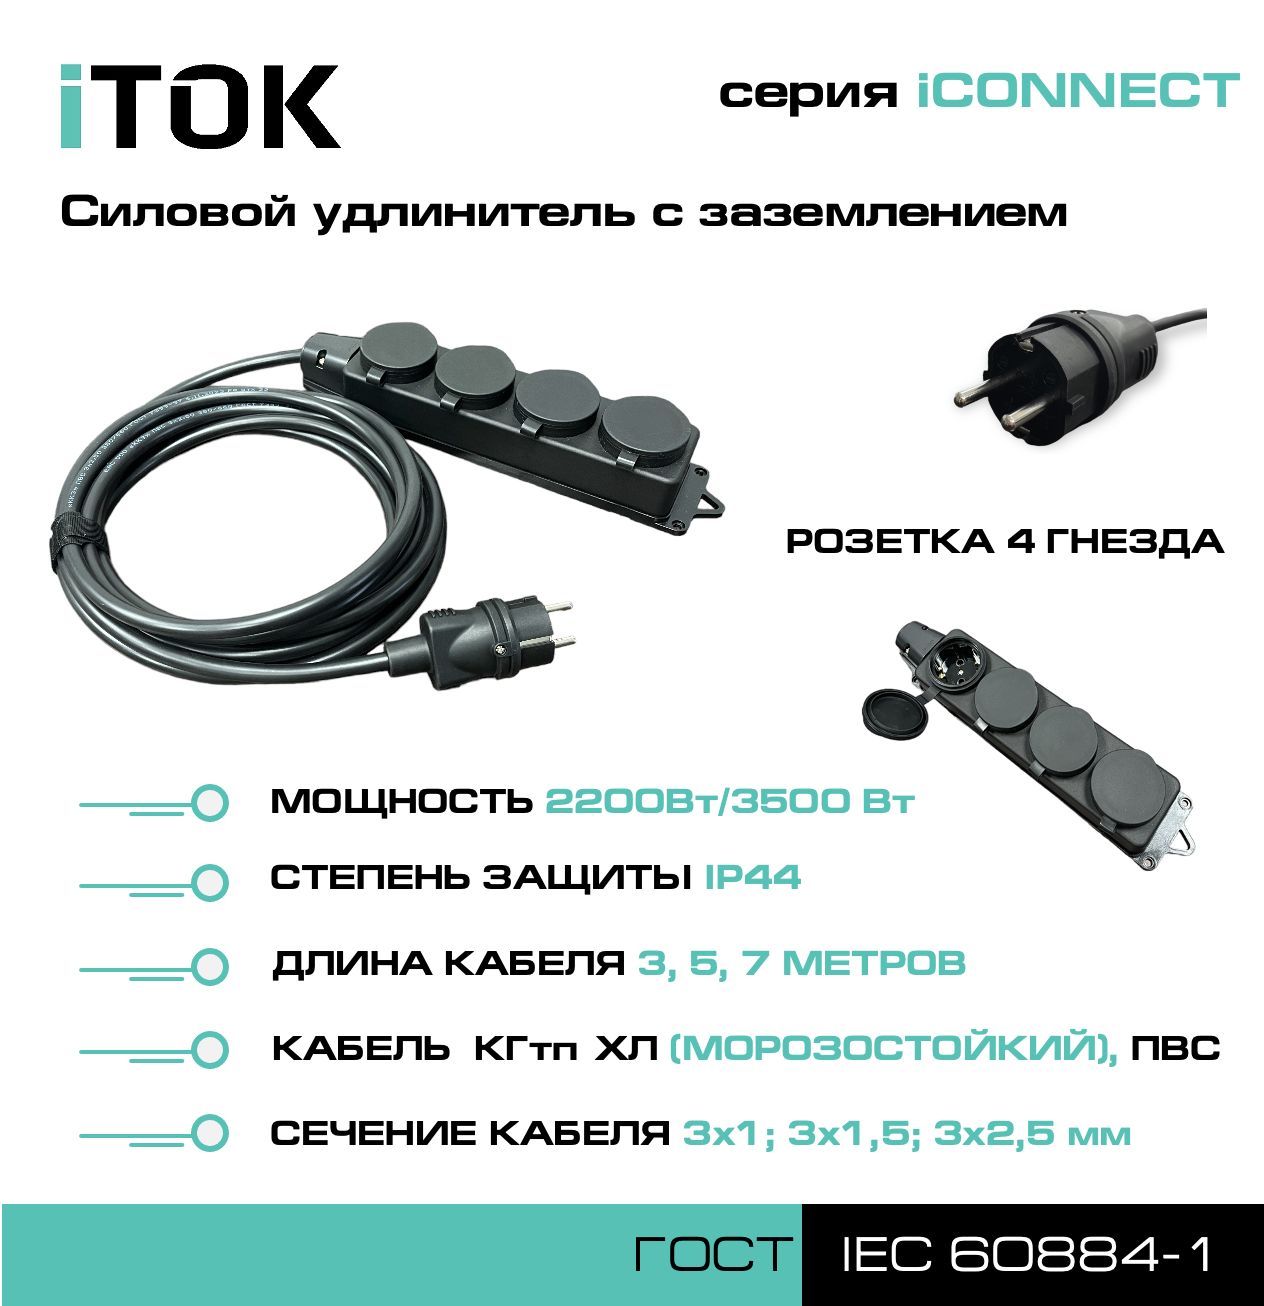 Удлинитель с заземлением серии iTOK iCONNECT ПВС 3х1 мм 4 гнезда IP44 3 м